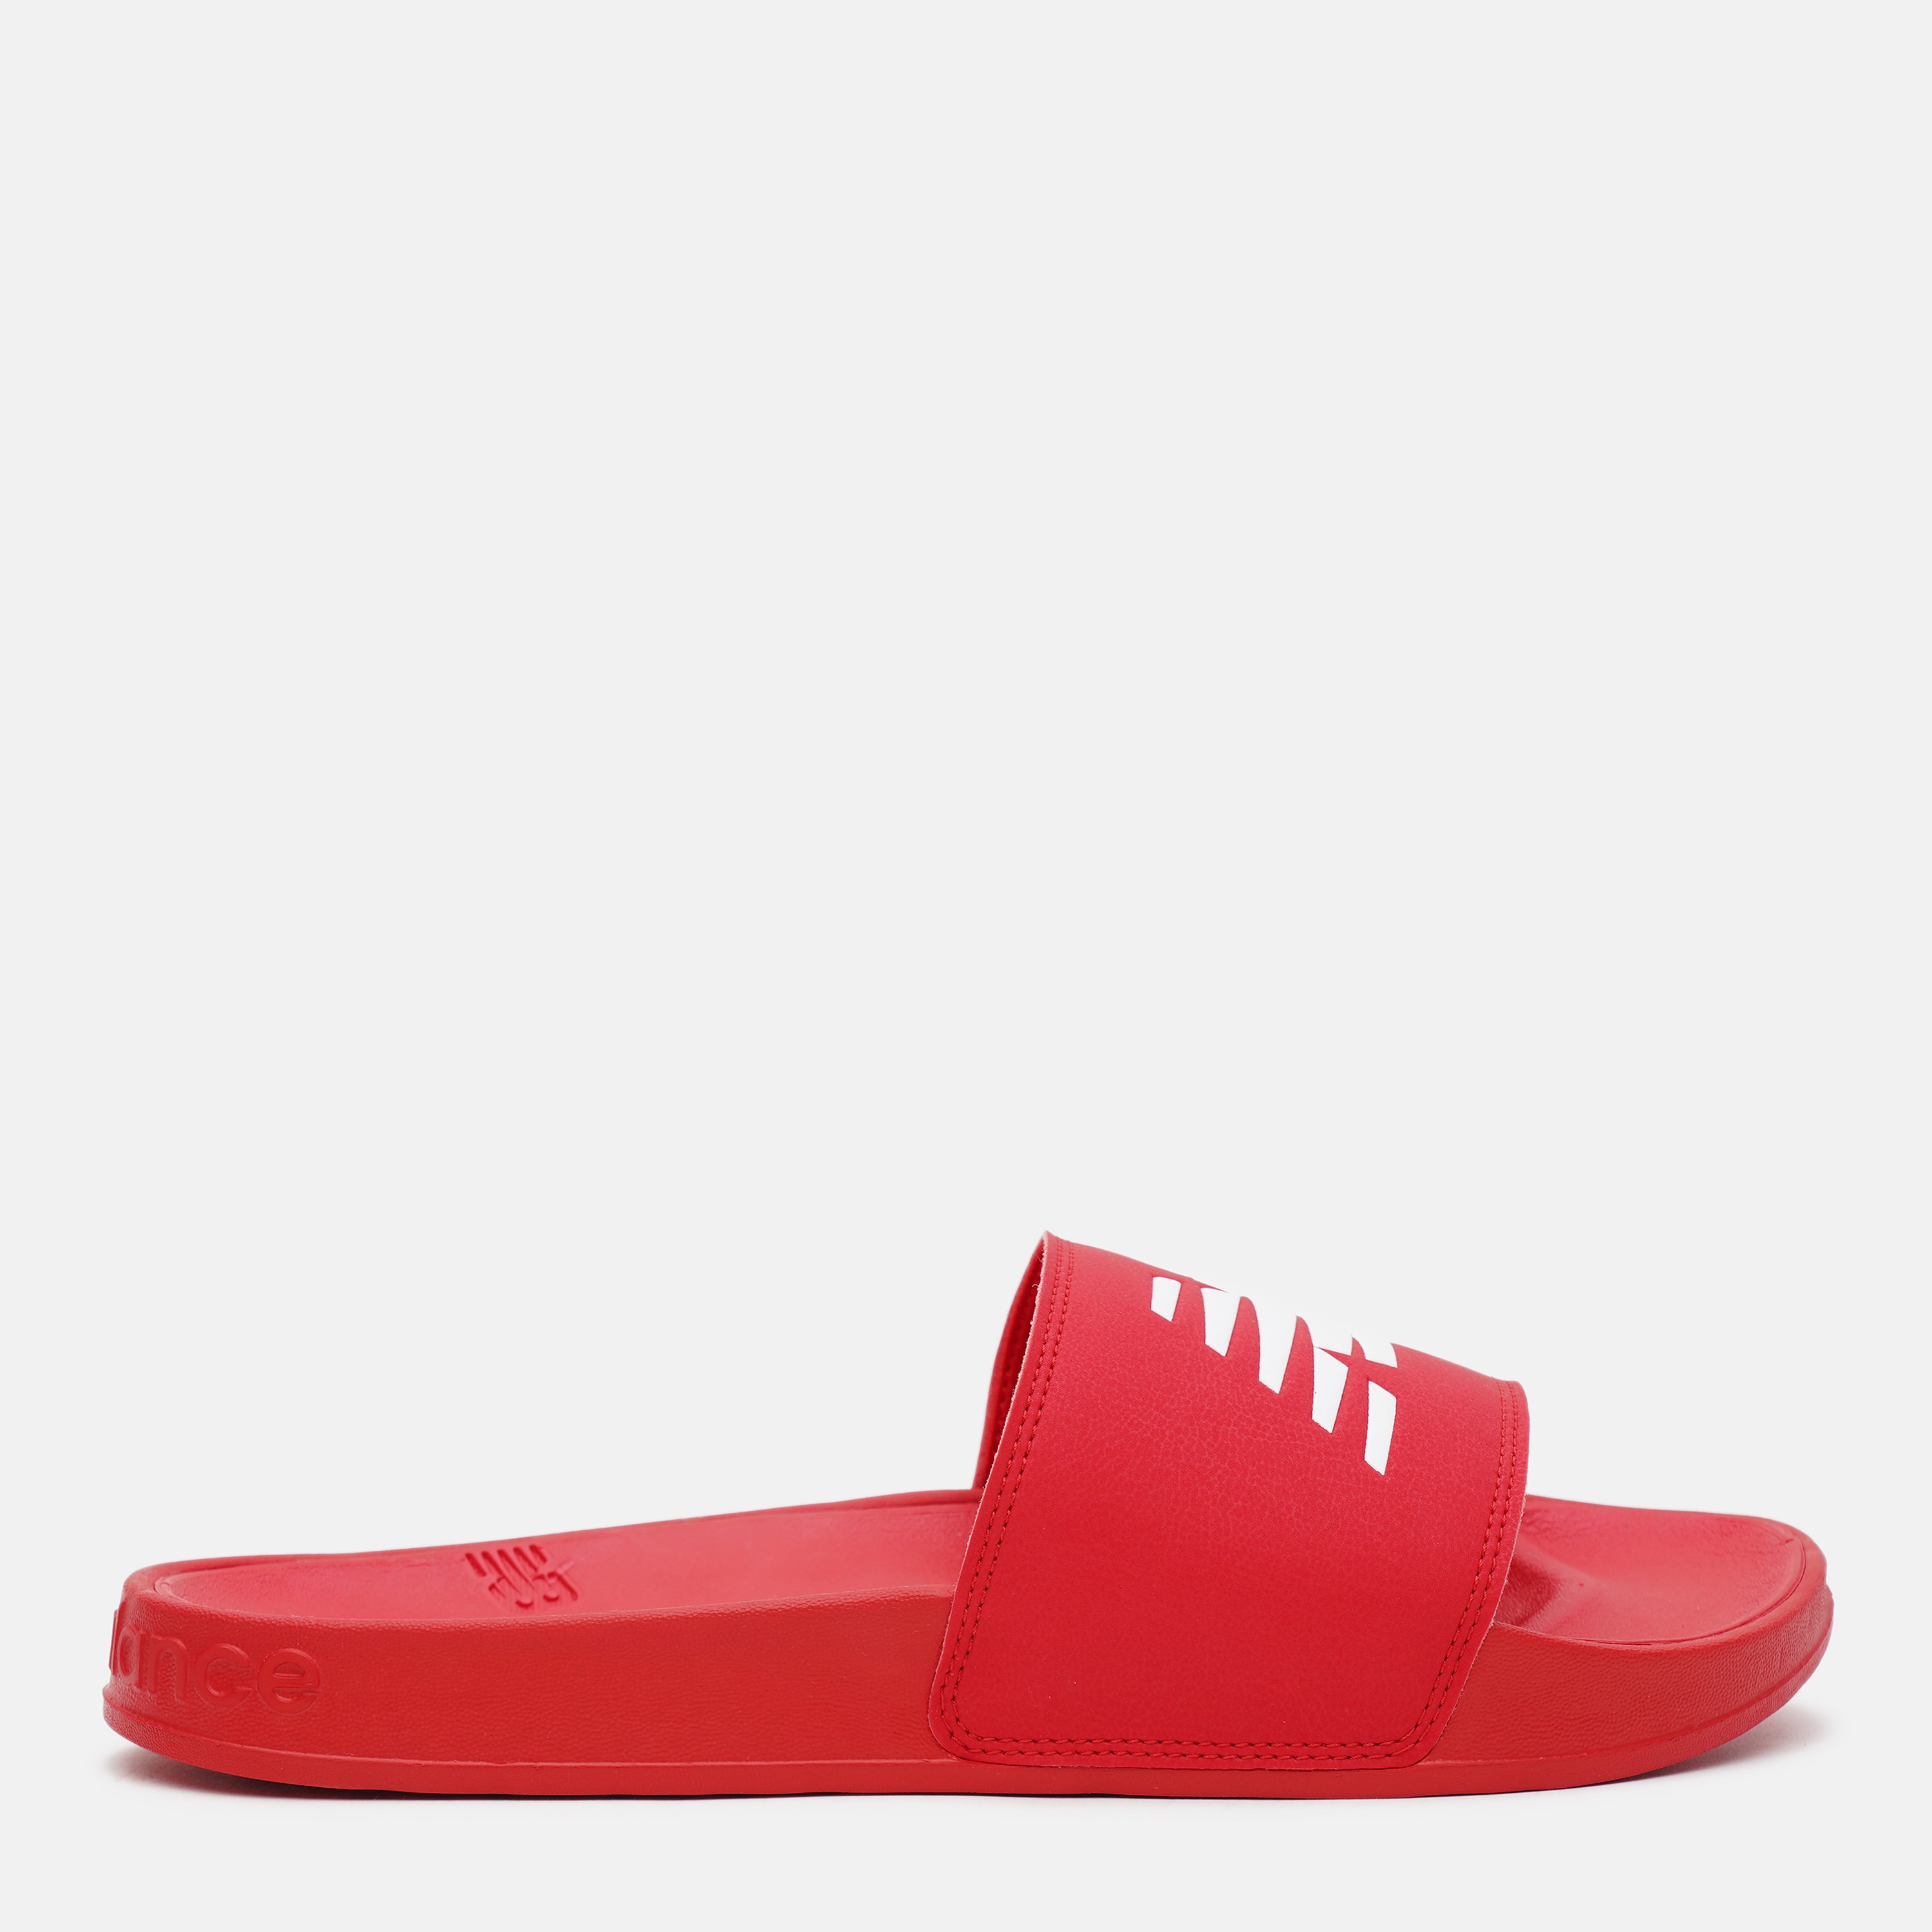 

Сланцы мужские New Balance Sandals красные 7 US, Sandals